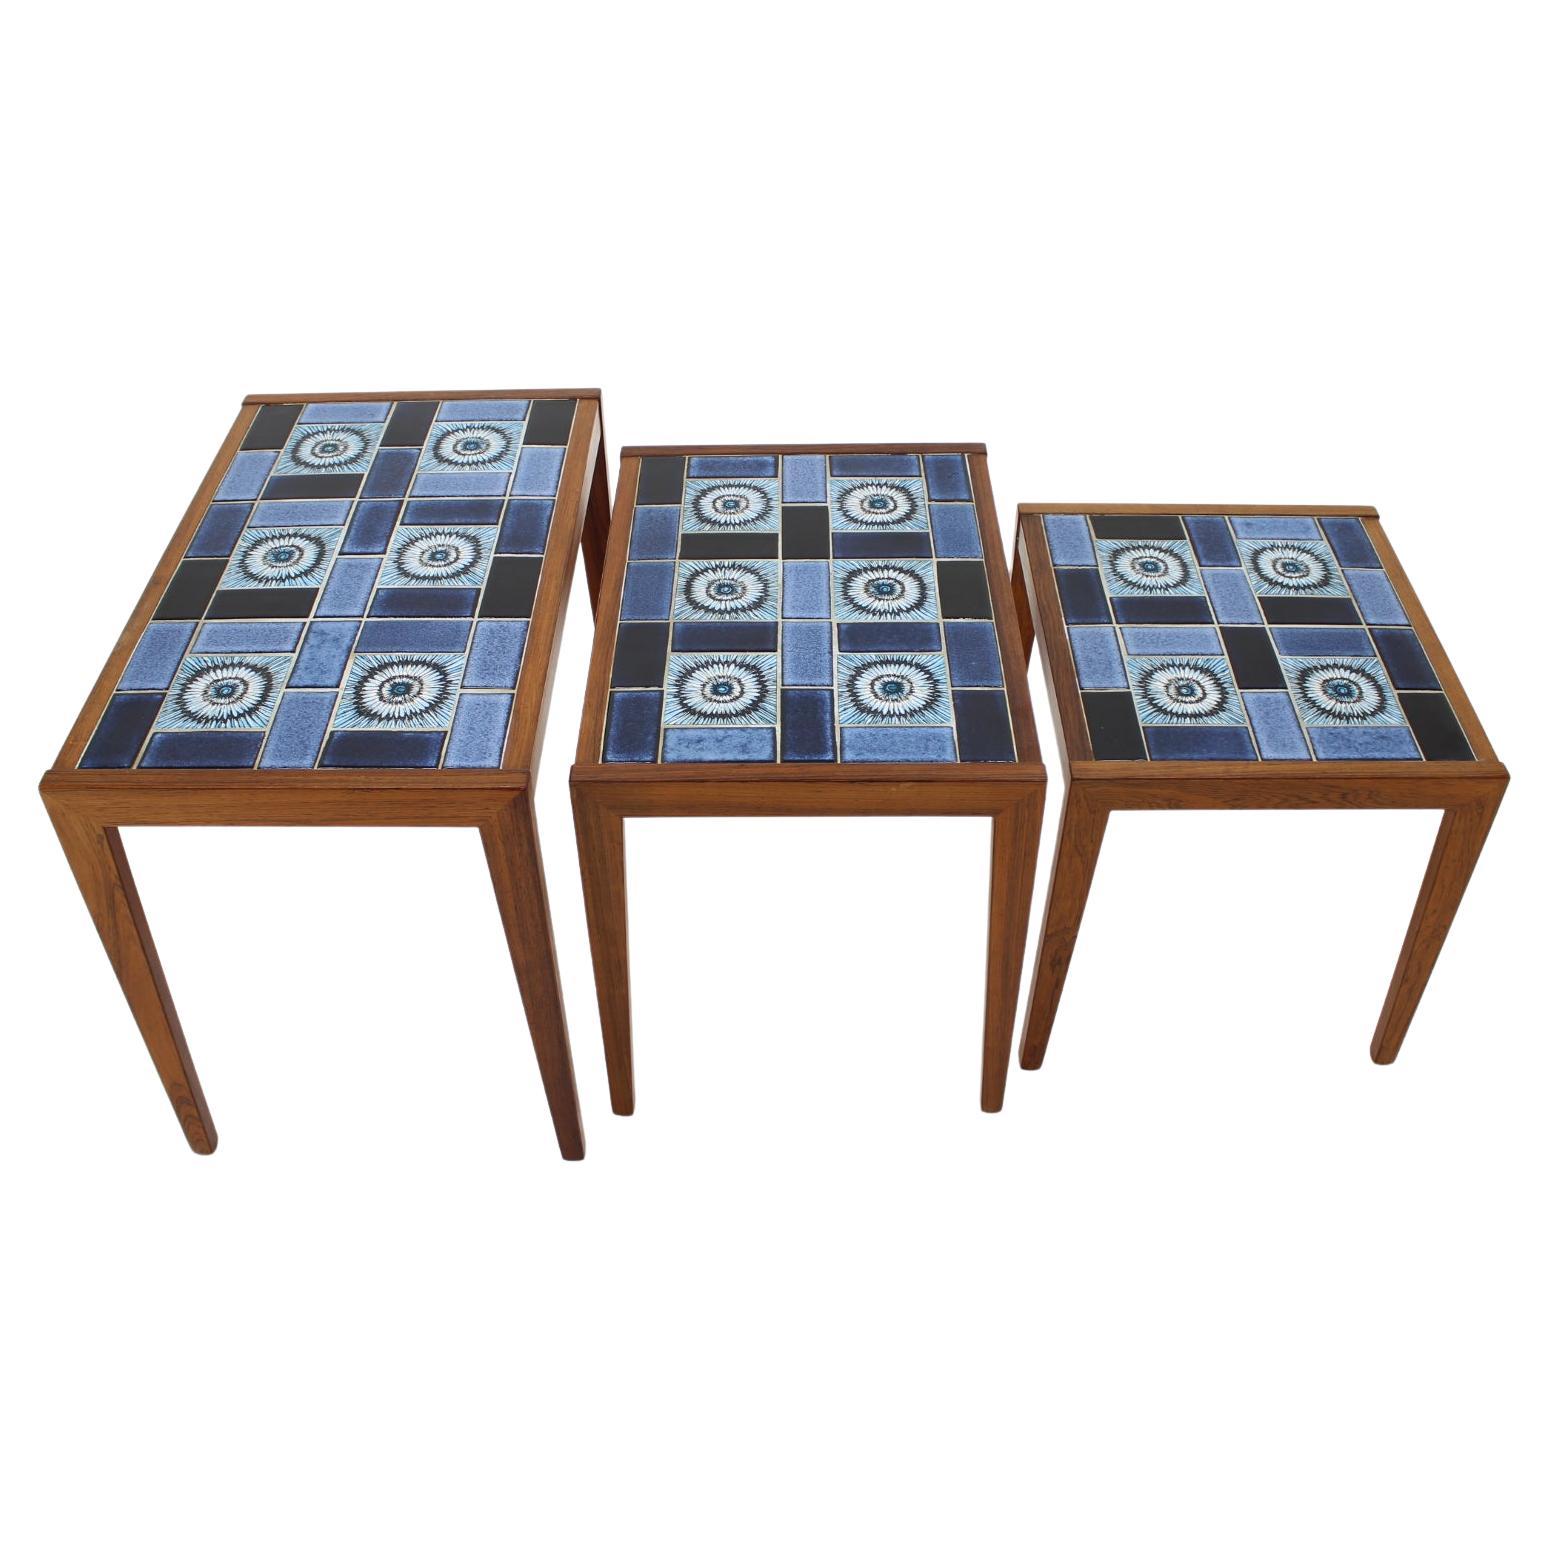 1960s Nesting Ceramic Tile Tables, Denmark For Sale